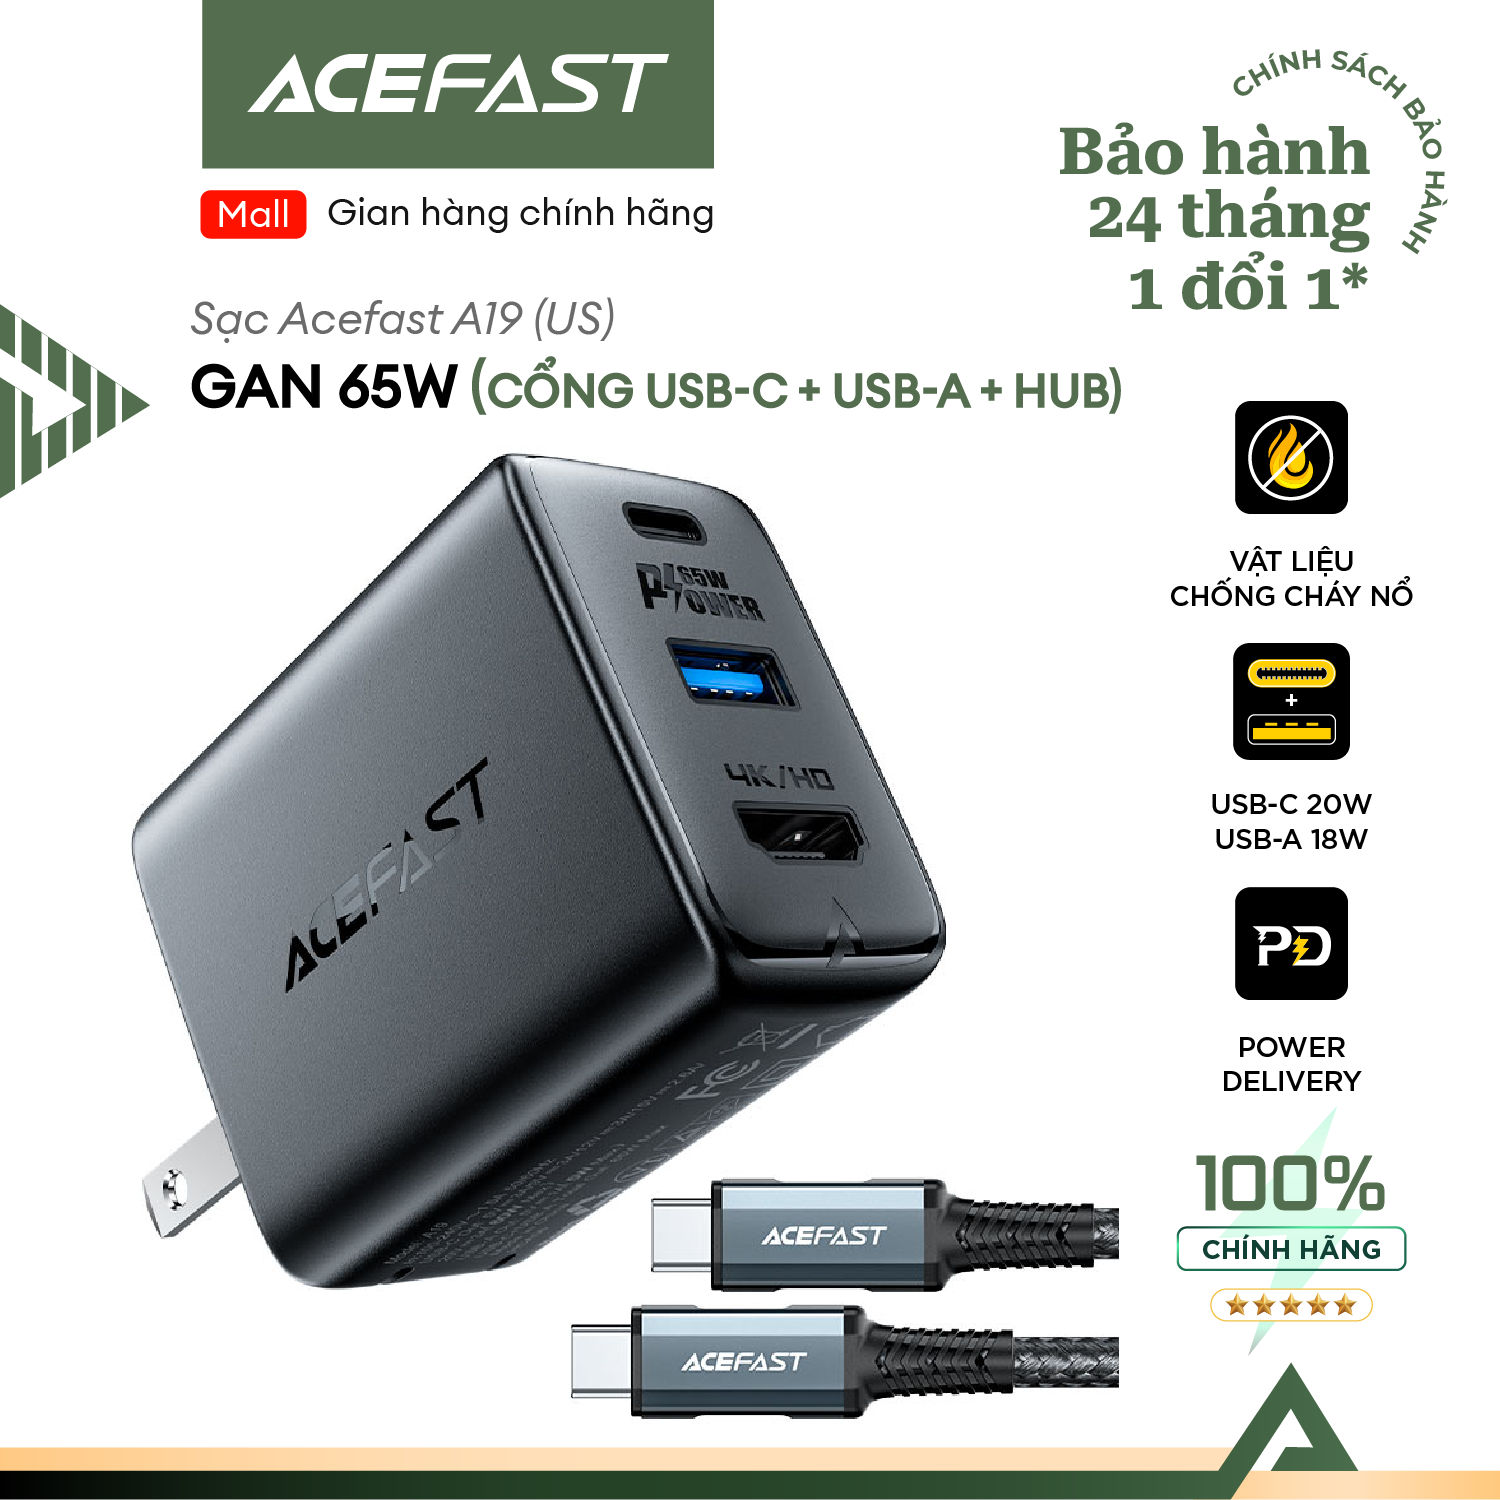 Sạc Acefast GaN 65W cổng USB-C + USB-A + HUB (US) - A19 Hàng chính hãng Acefast